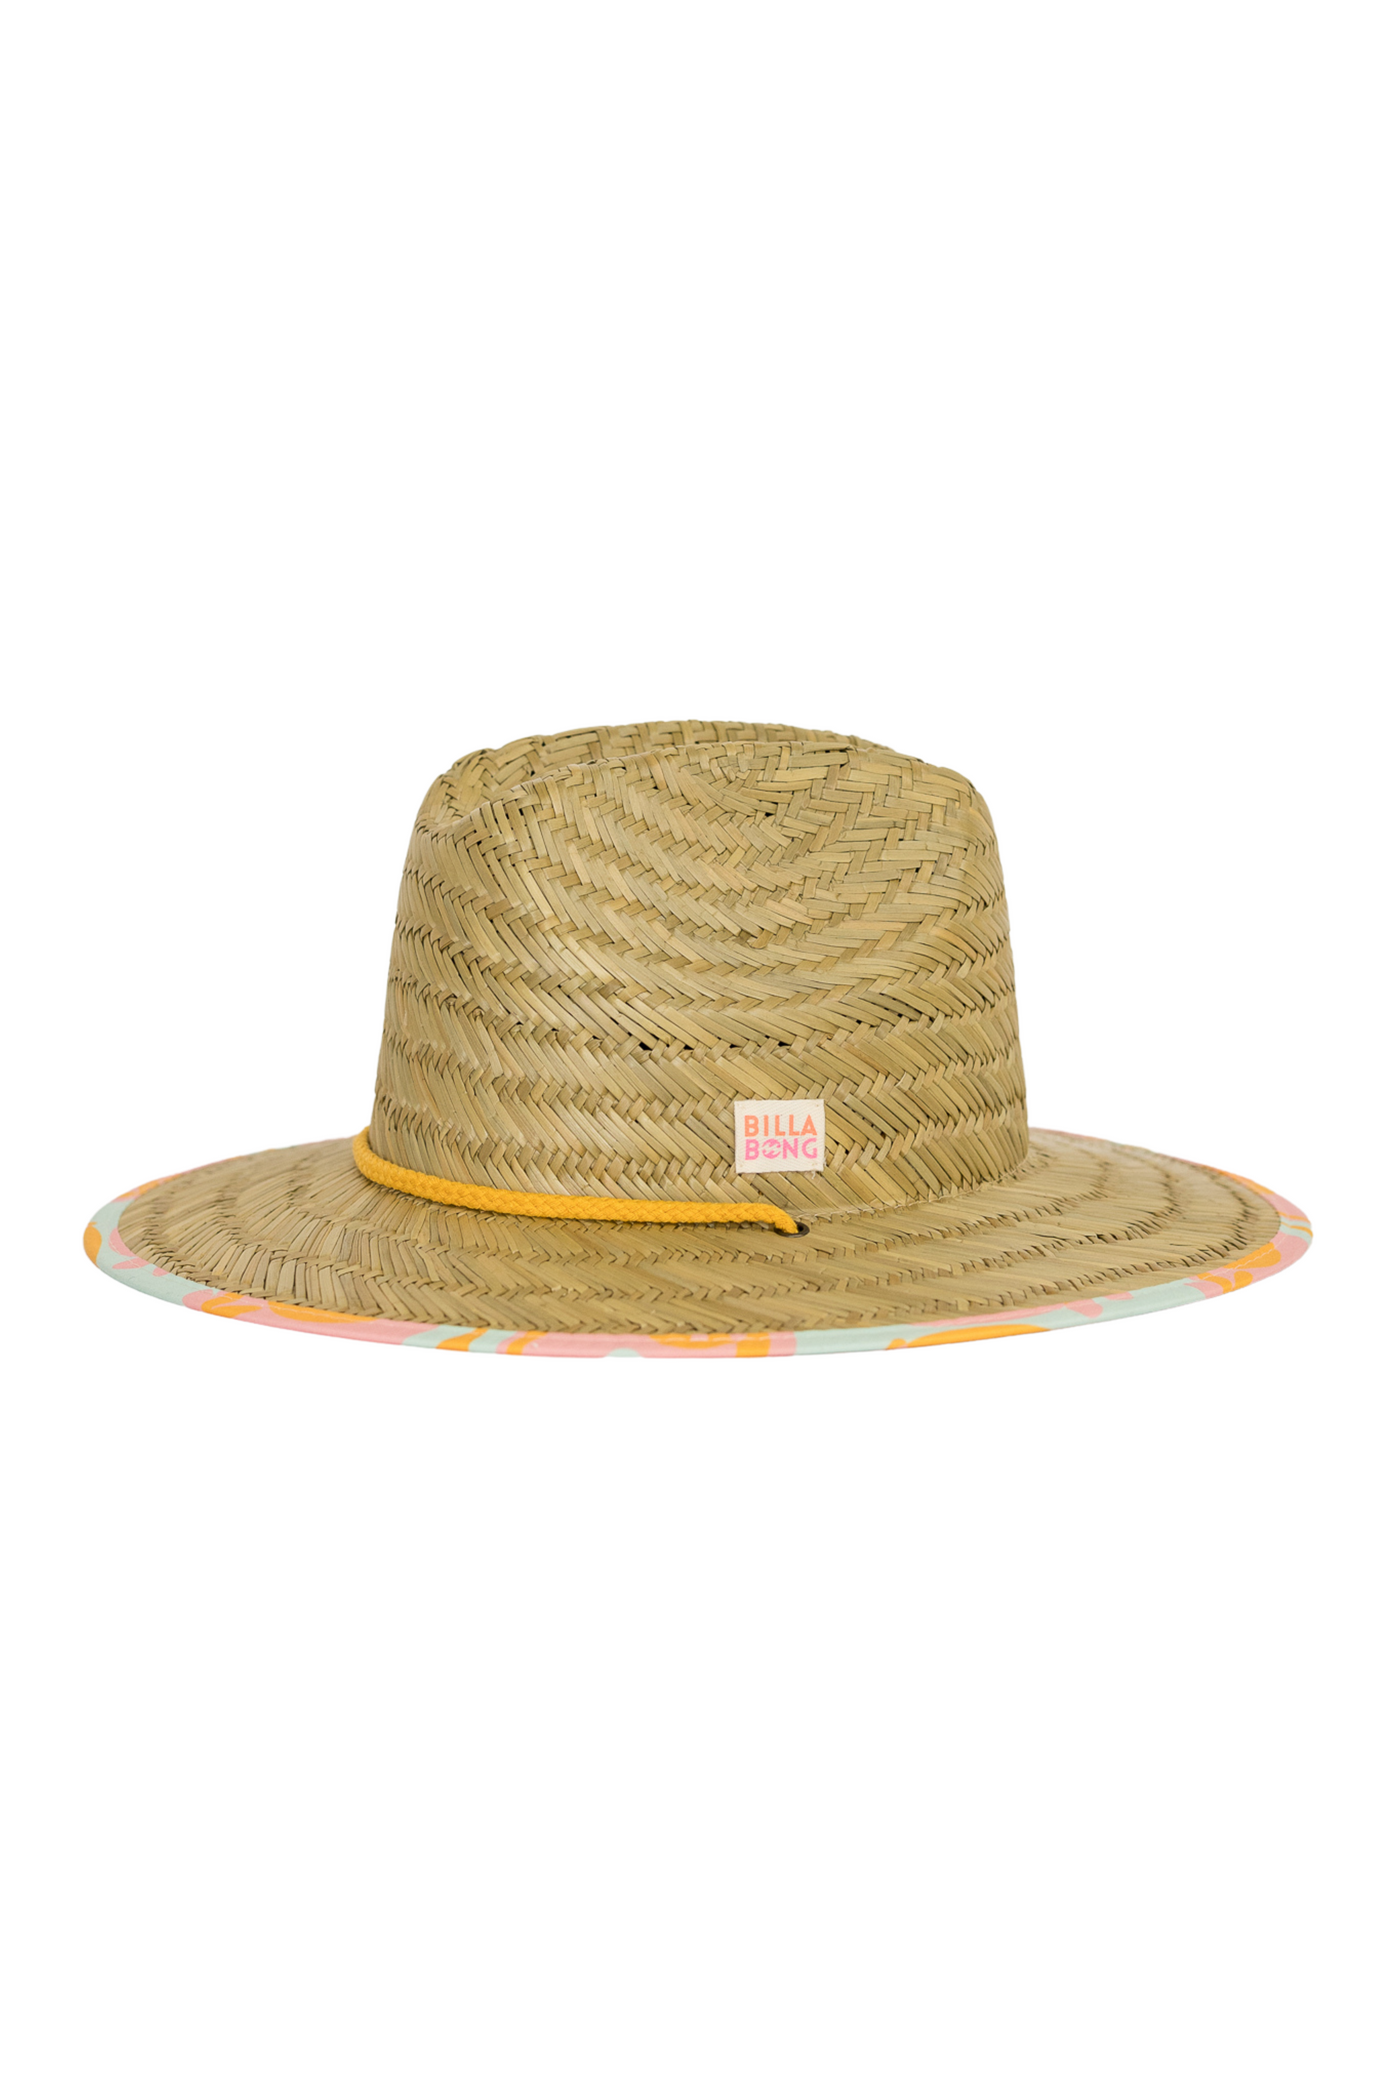 Girls' Beach Dayz Lifeguard Hat